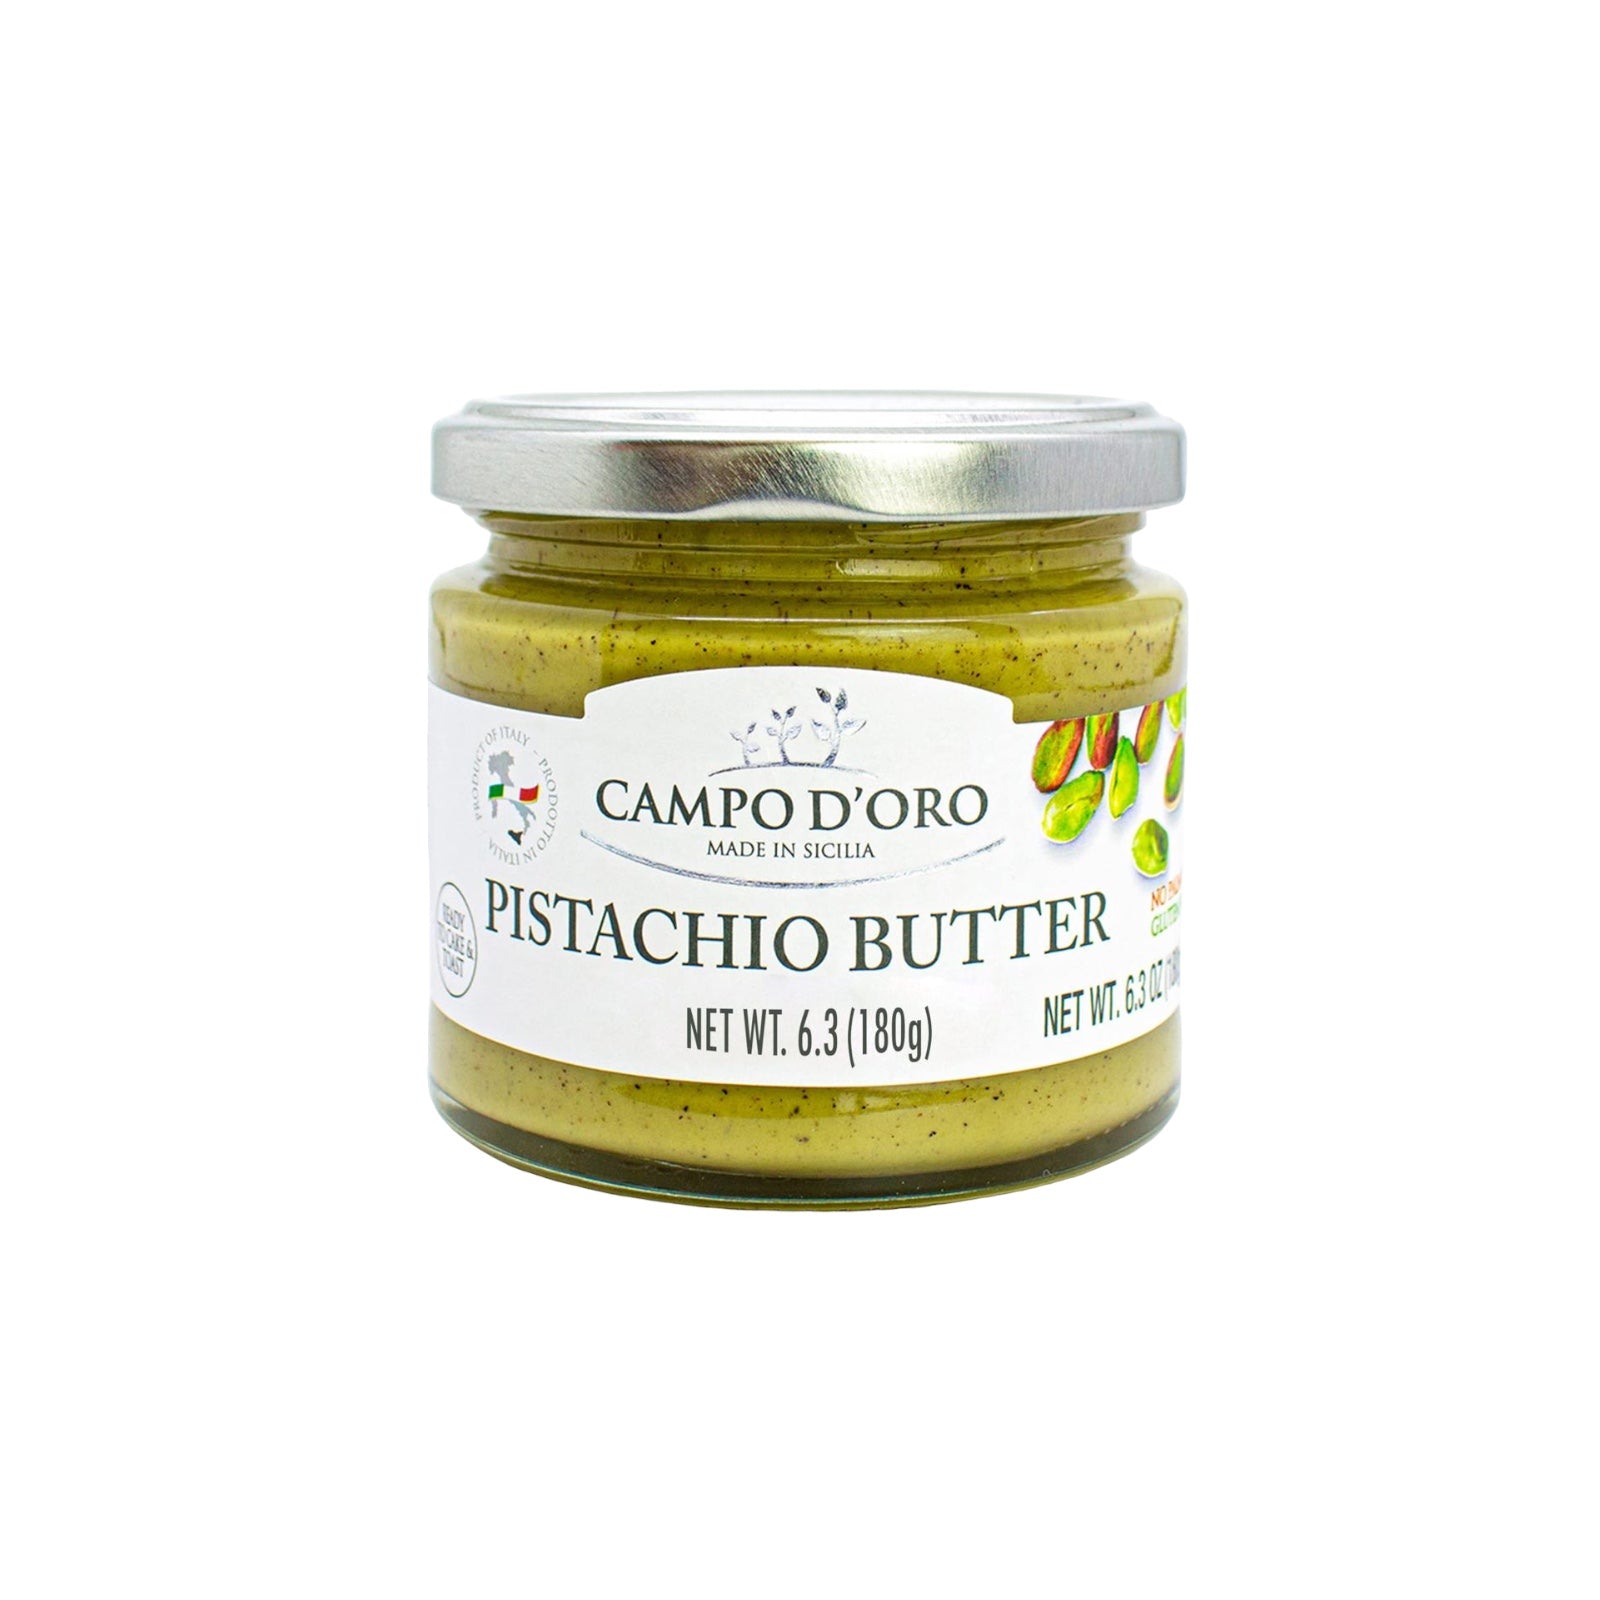 Pistachio Butter Cream Spread By Campo D’oro 180g